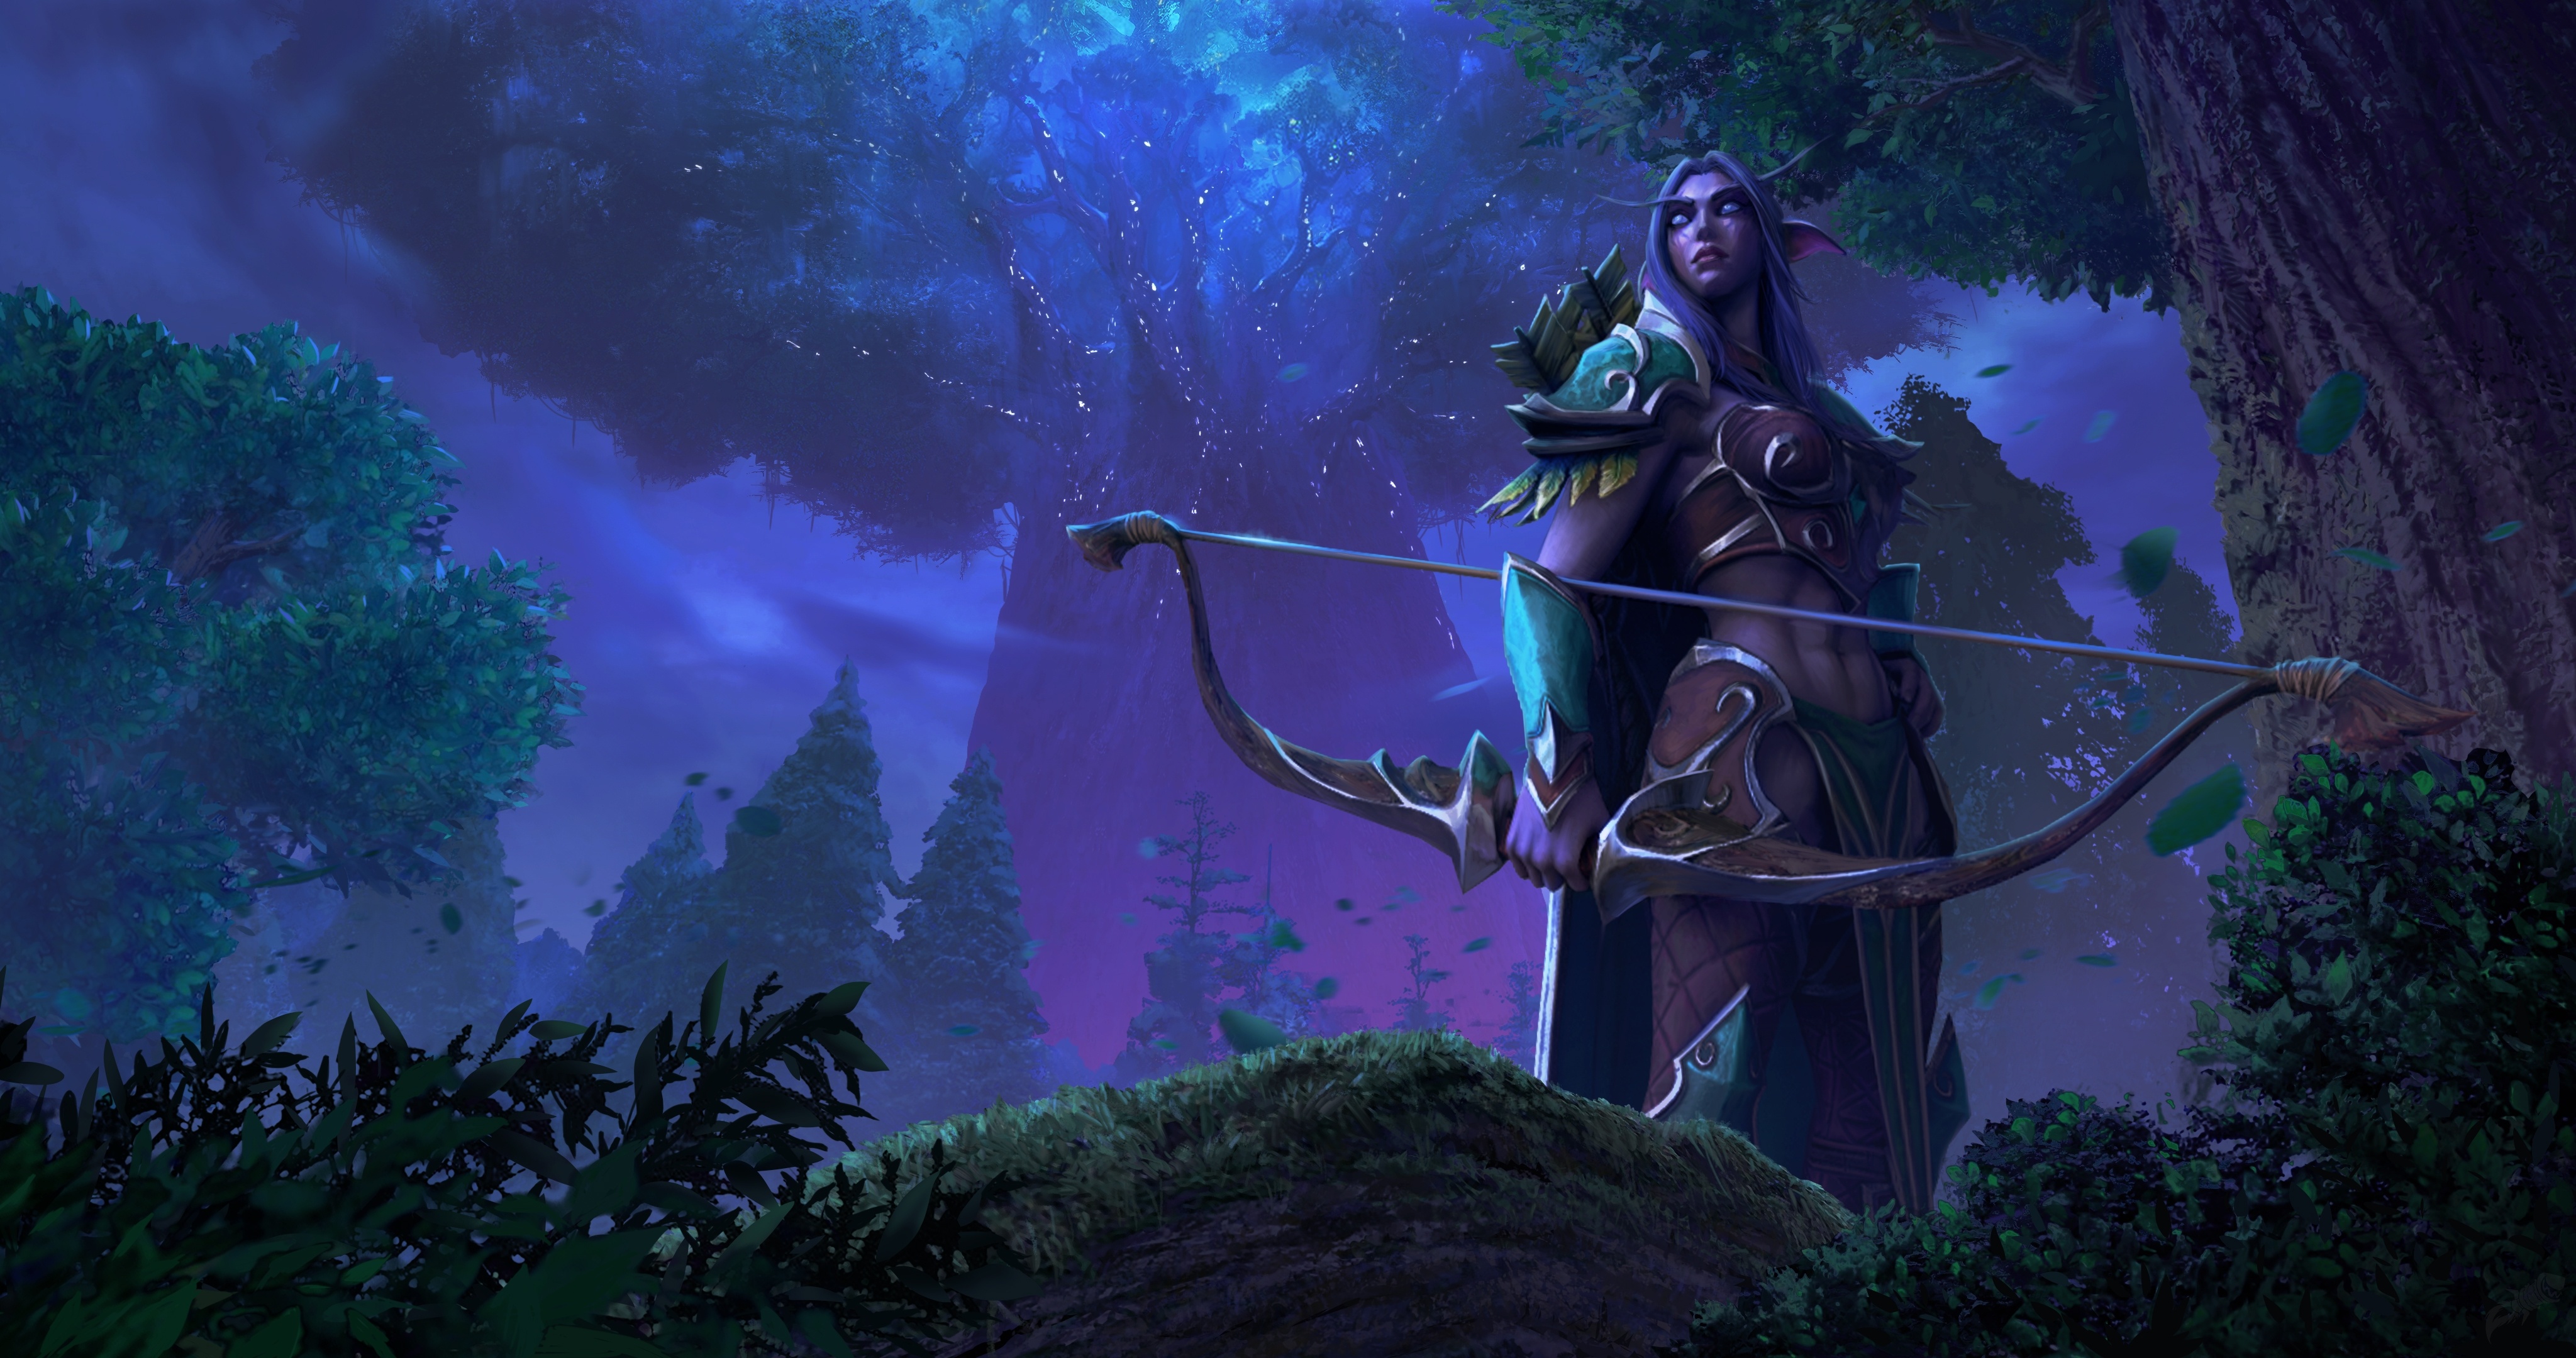 Artwork issu du datamining de Warcraft III Reforged